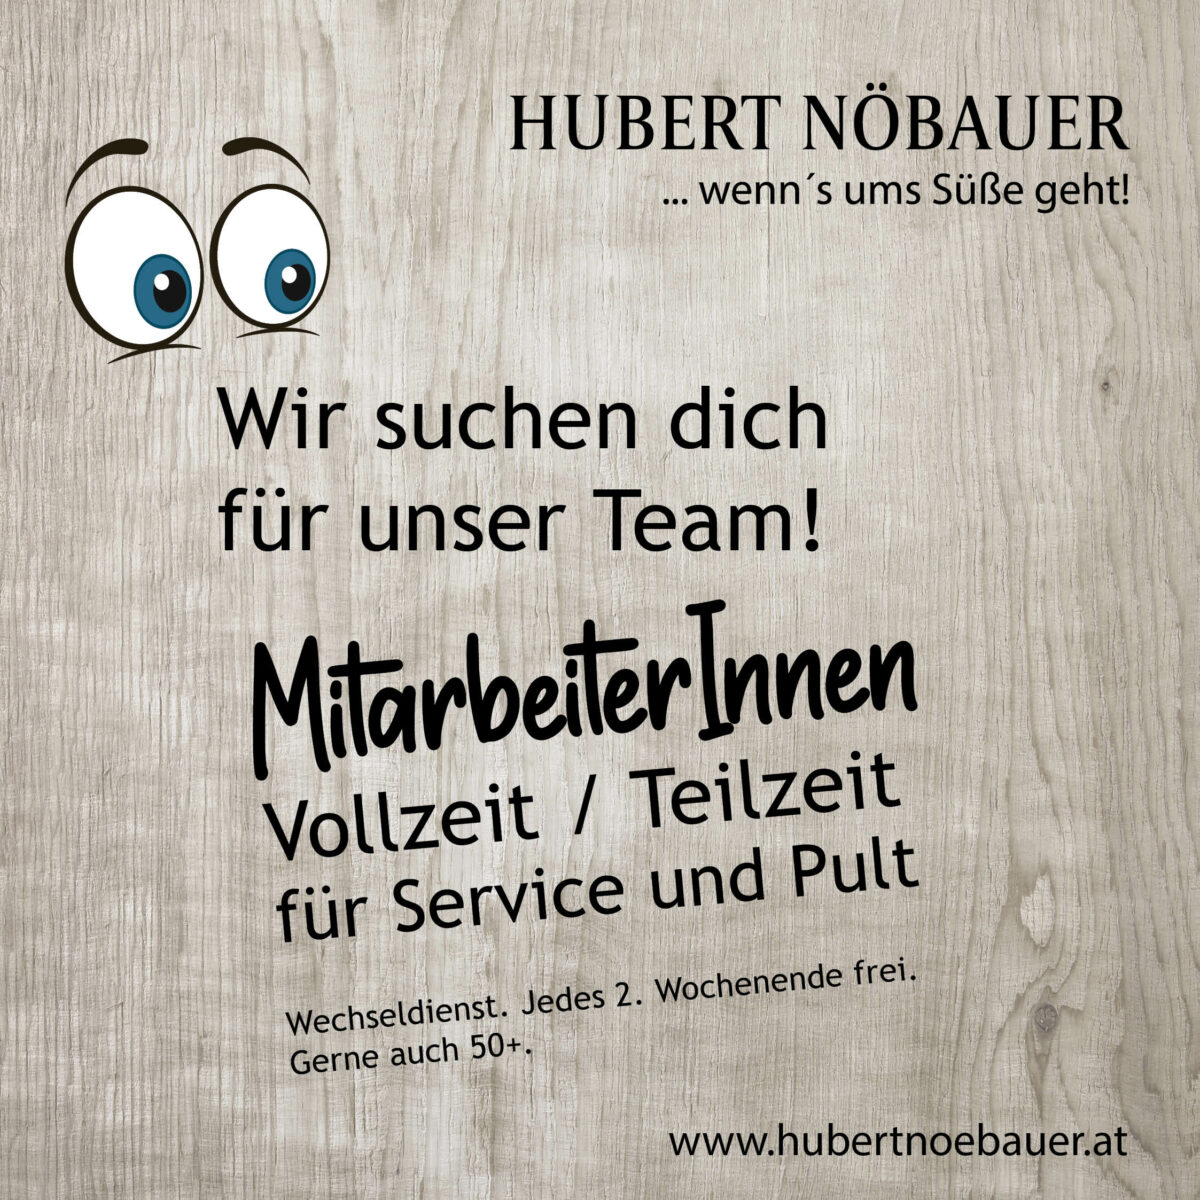 Wir suchen Dich für unser Team - Hubert Nöbauer